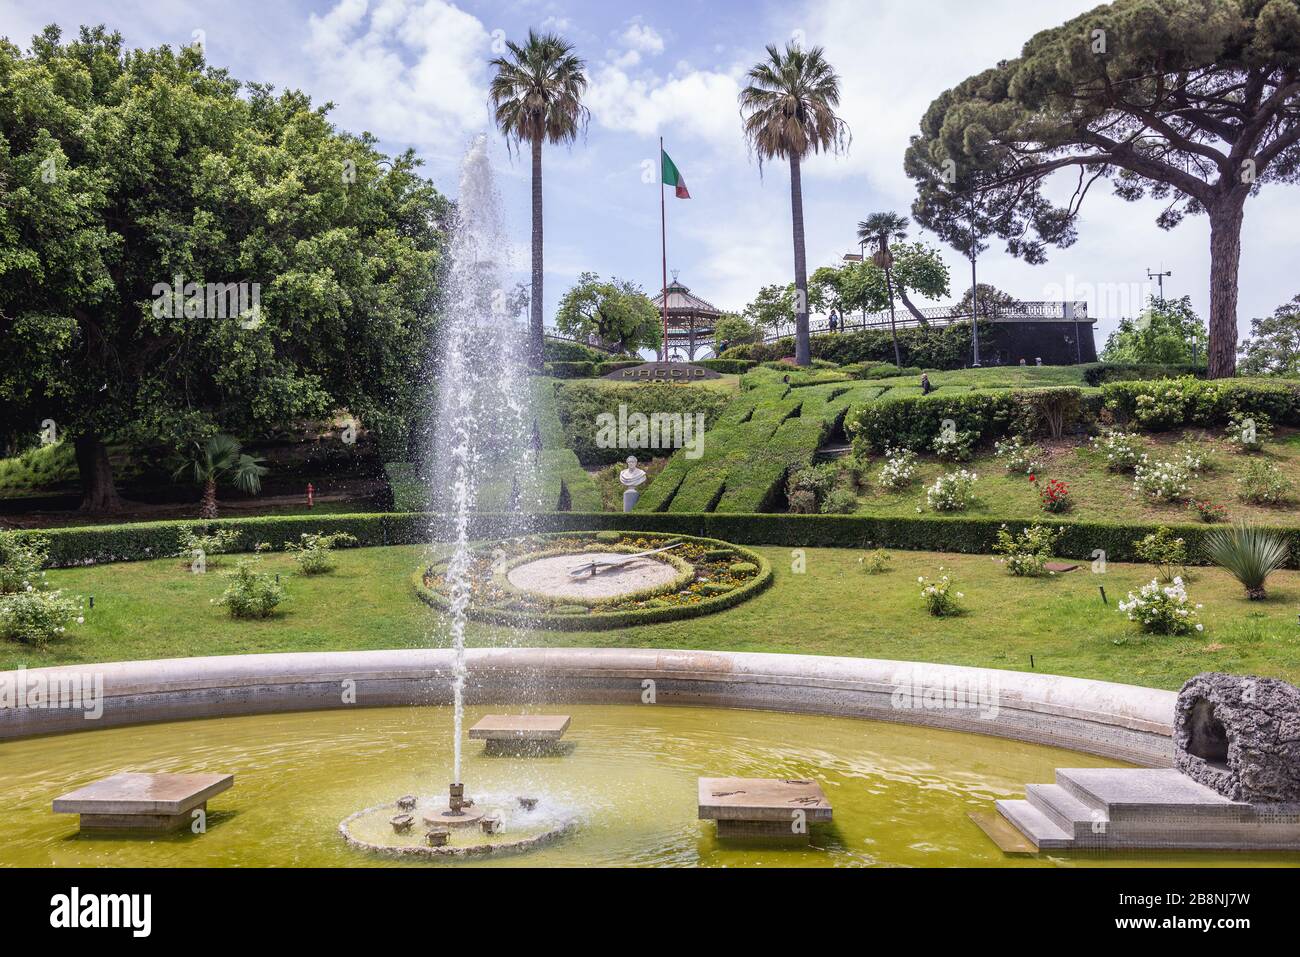 Giardino Bellini chiamato anche Villa Bellini, il parco più antico di Catania, seconda città più grande dell'isola siciliana d'Italia Foto Stock